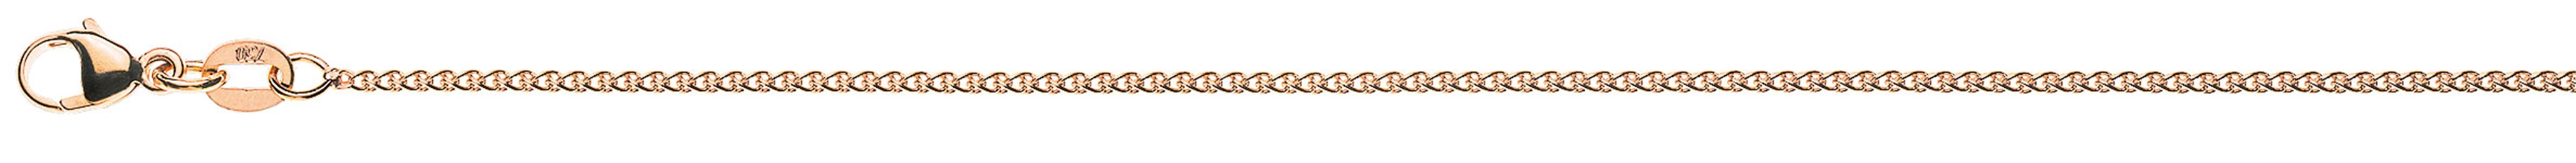 AURONOS Prestige Necklace rose gold 18K cable chain 45cm 1.2mm